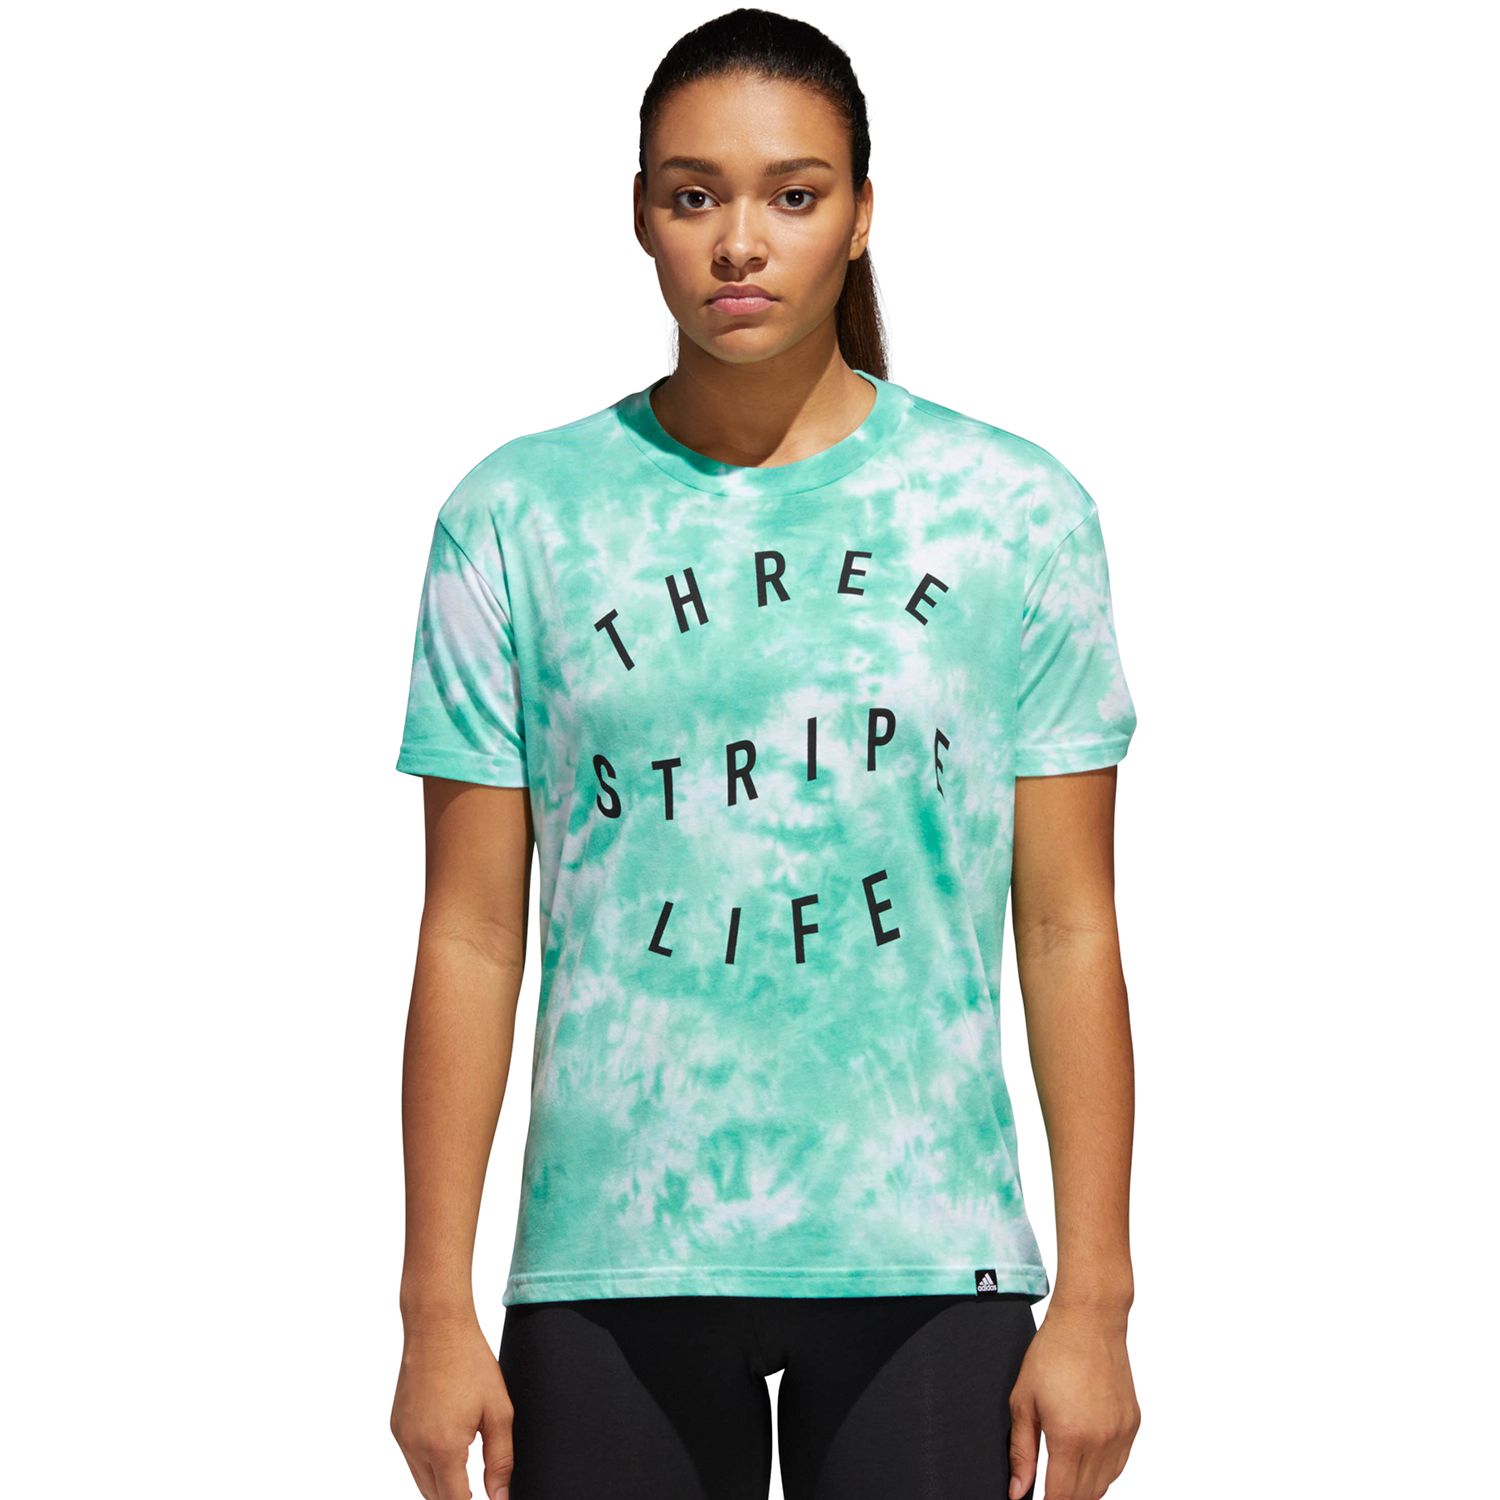 three stripe life women's shirt